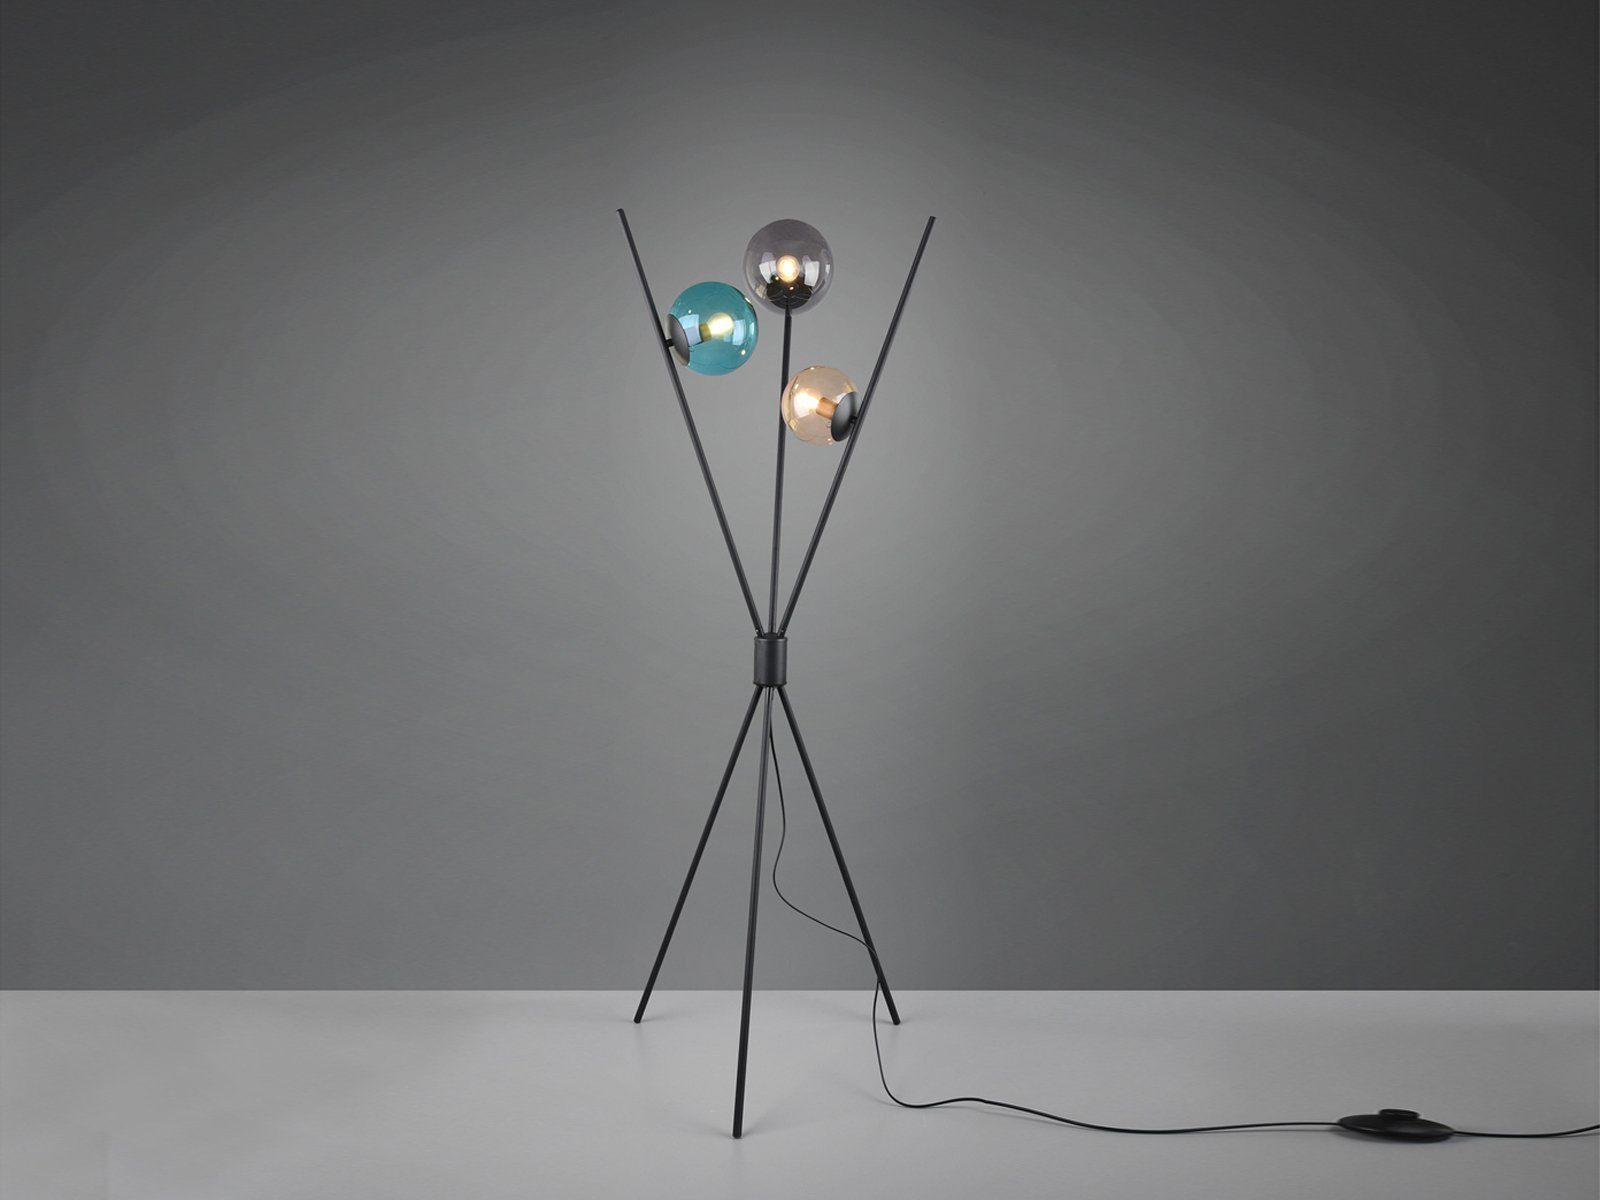 Dreibein, TRIO Stehlampe, Bunt-Schwarz Glas-kugel wechselbar, ausgefallene Lampe LED Bunt LED Warmweiß, 156cm Höhe Tripod moderne